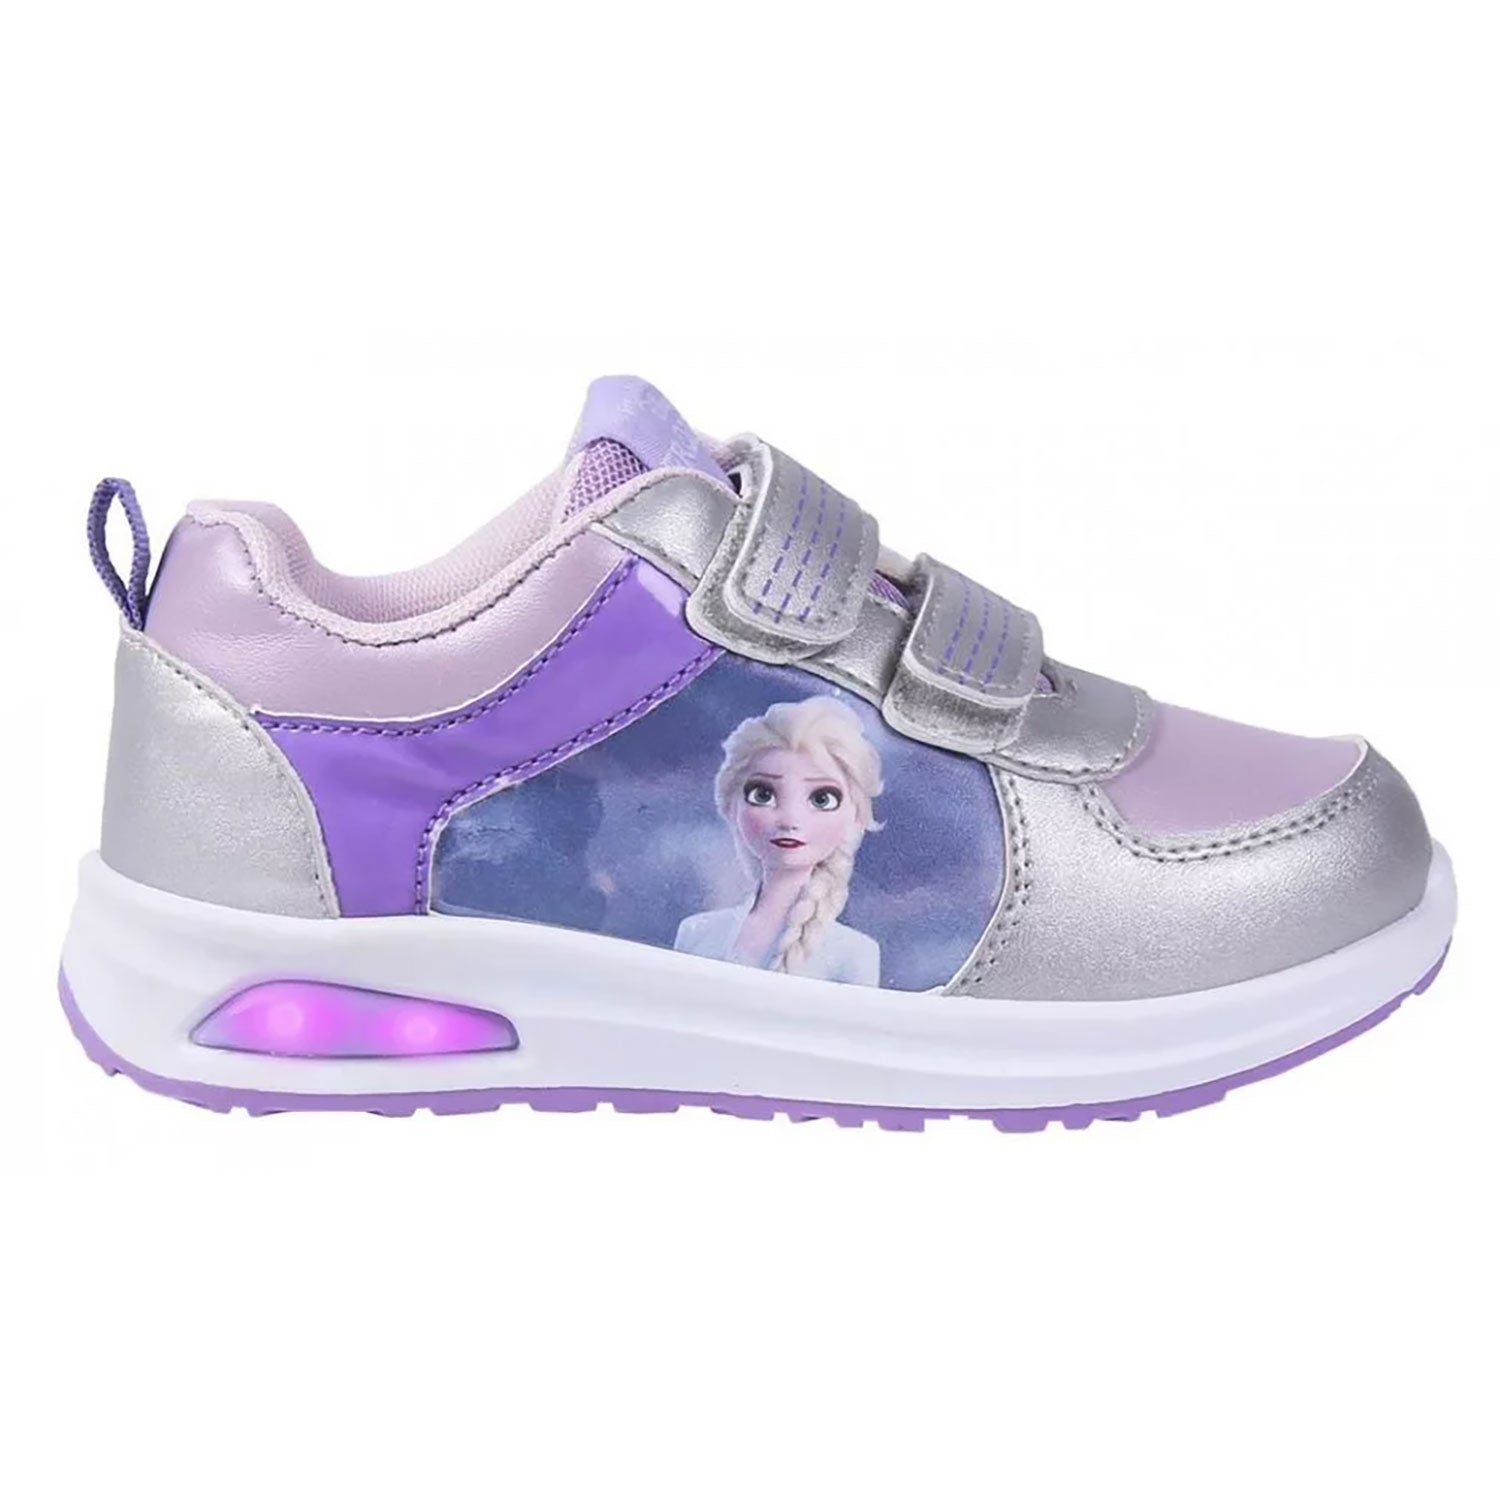 Scarpe sportive Disney Frozen Elsa a strappo per bambina con luci led 4983